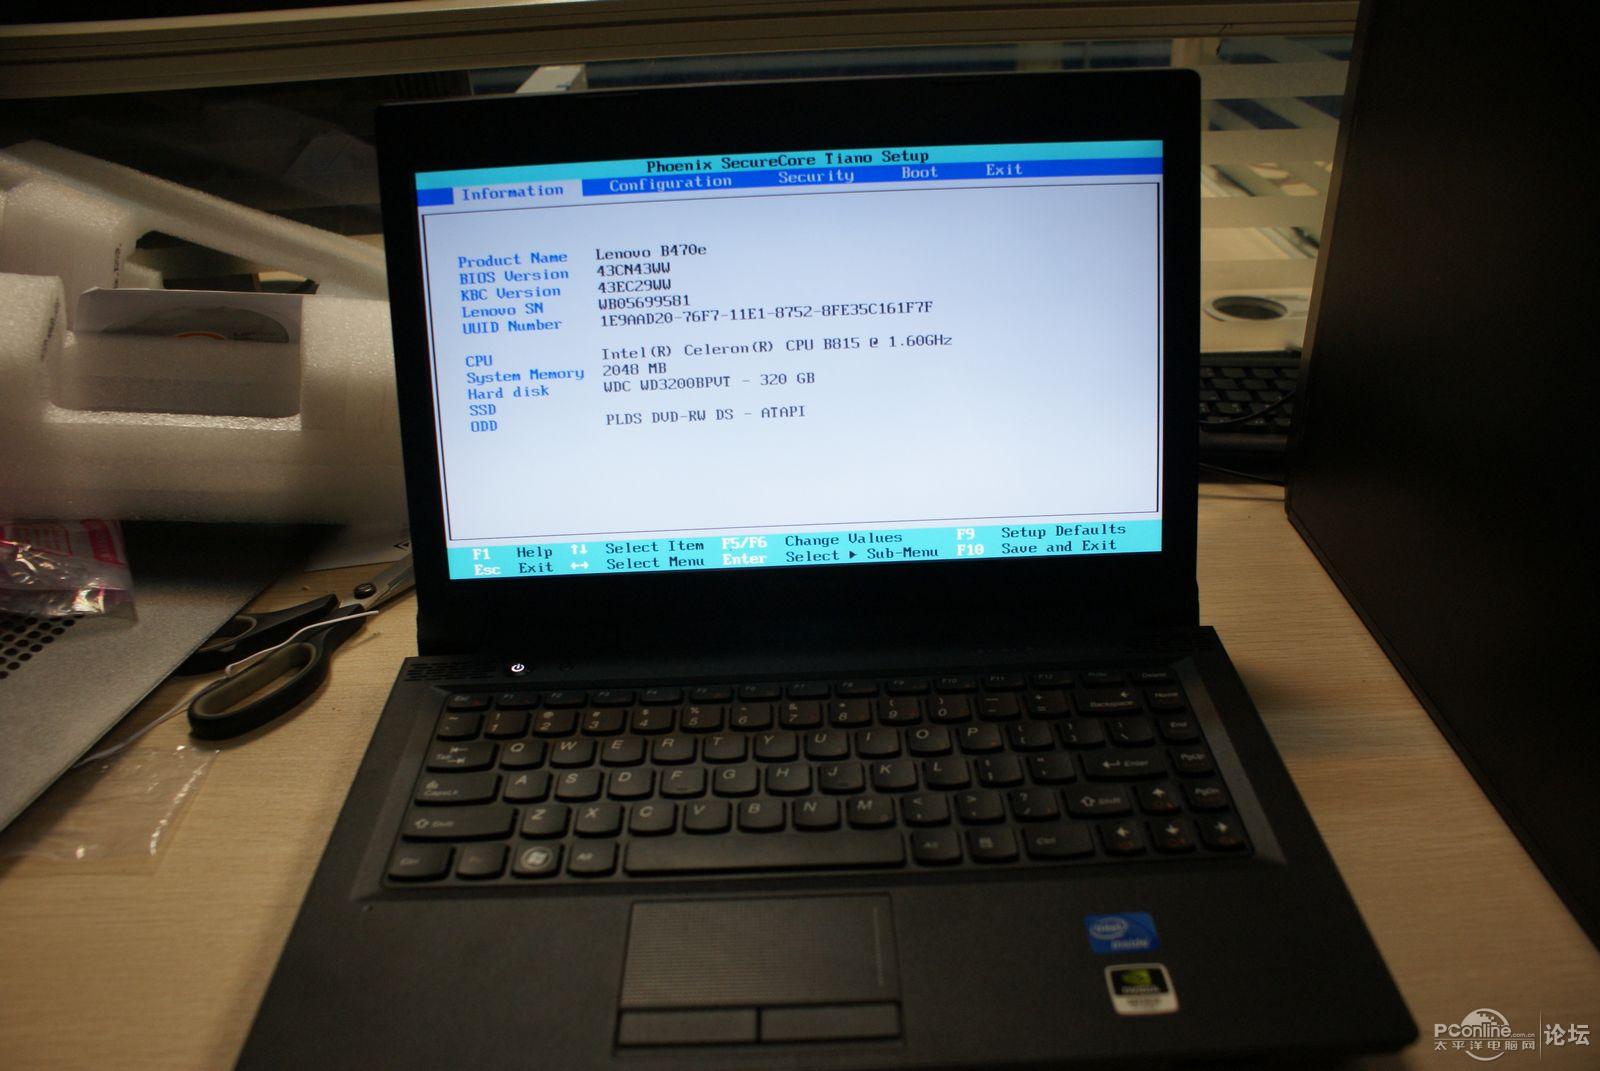 联想B470笔记本电脑适合装什么系统？Windows8怎么样，我现在用的是XP，感觉好卡。